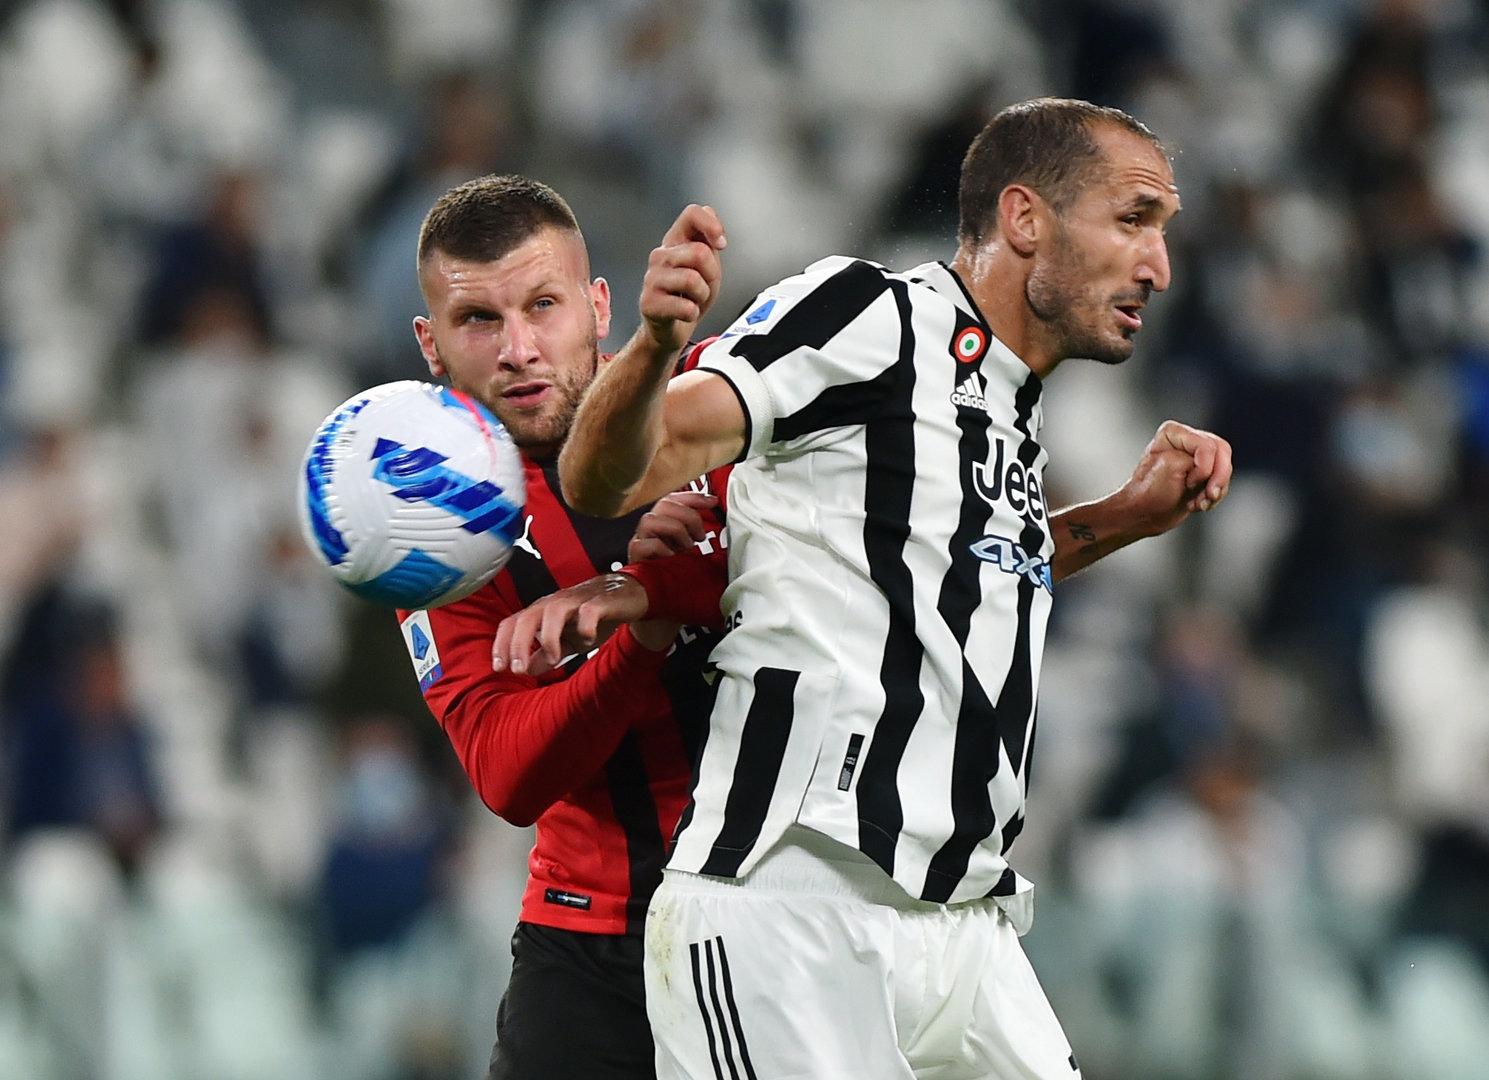 Remis im Hit gegen Milan: Juventus bleibt weiter sieglos